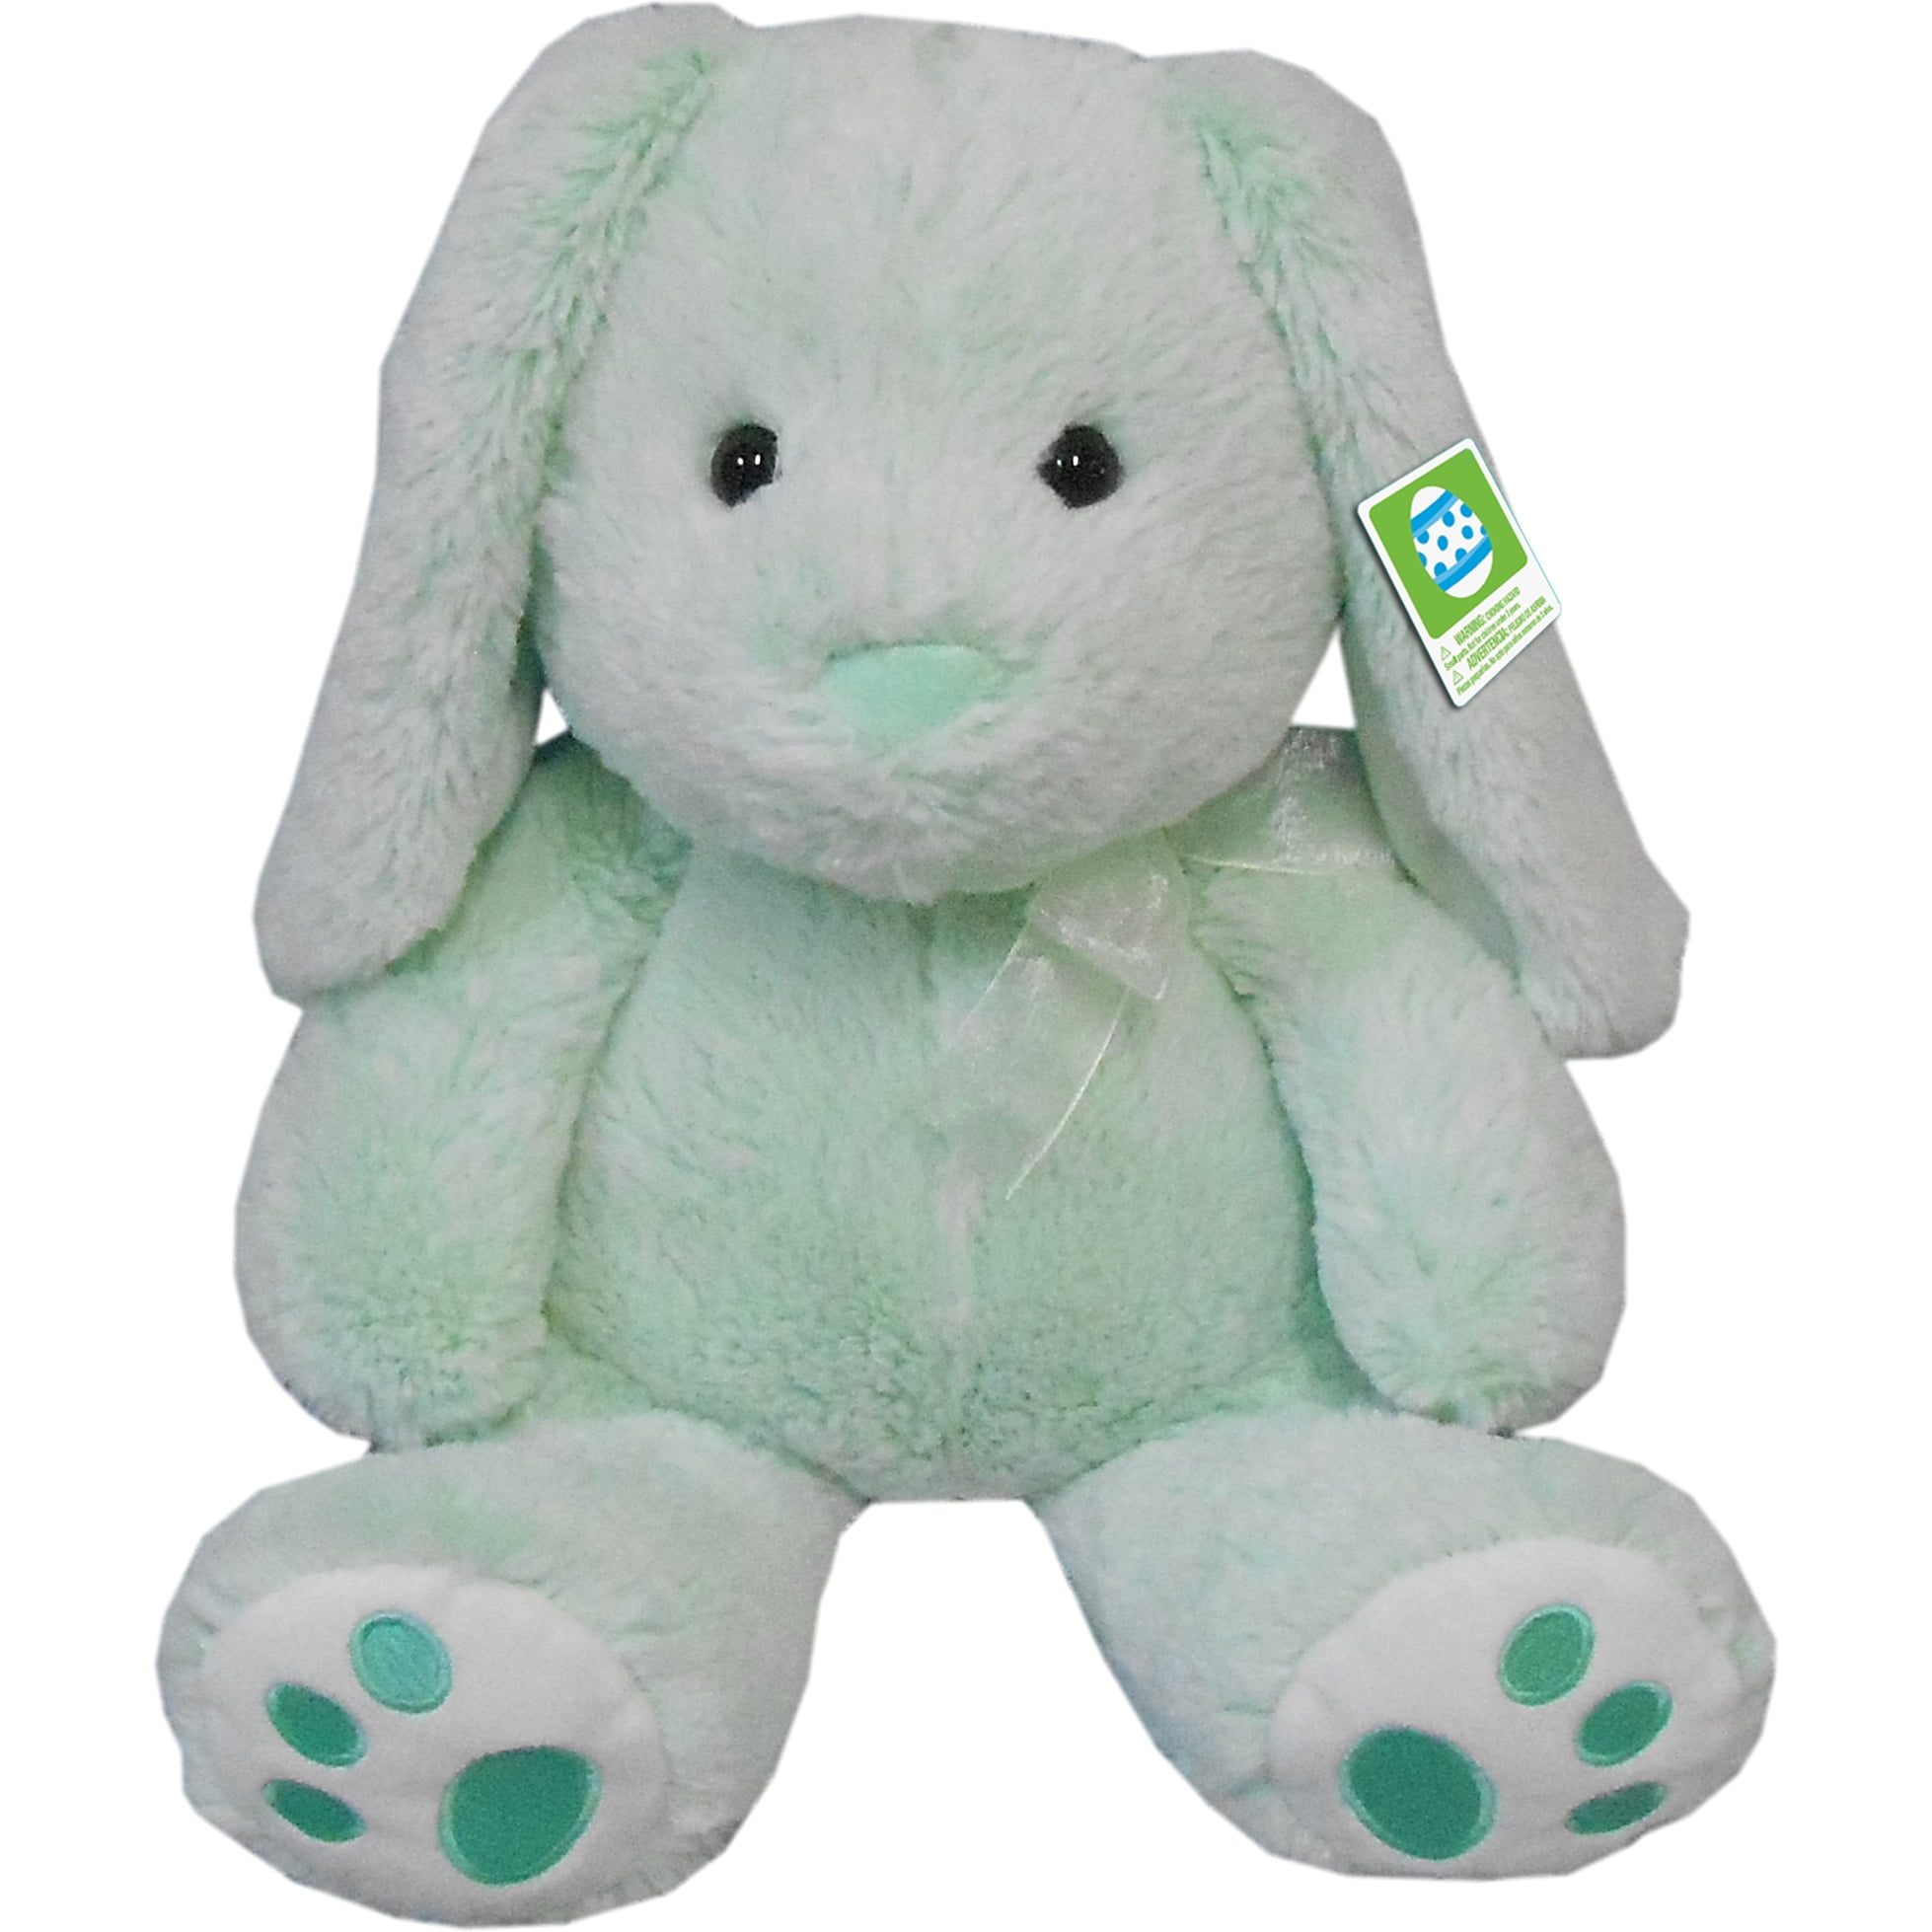 bunny stuffed animal walmart